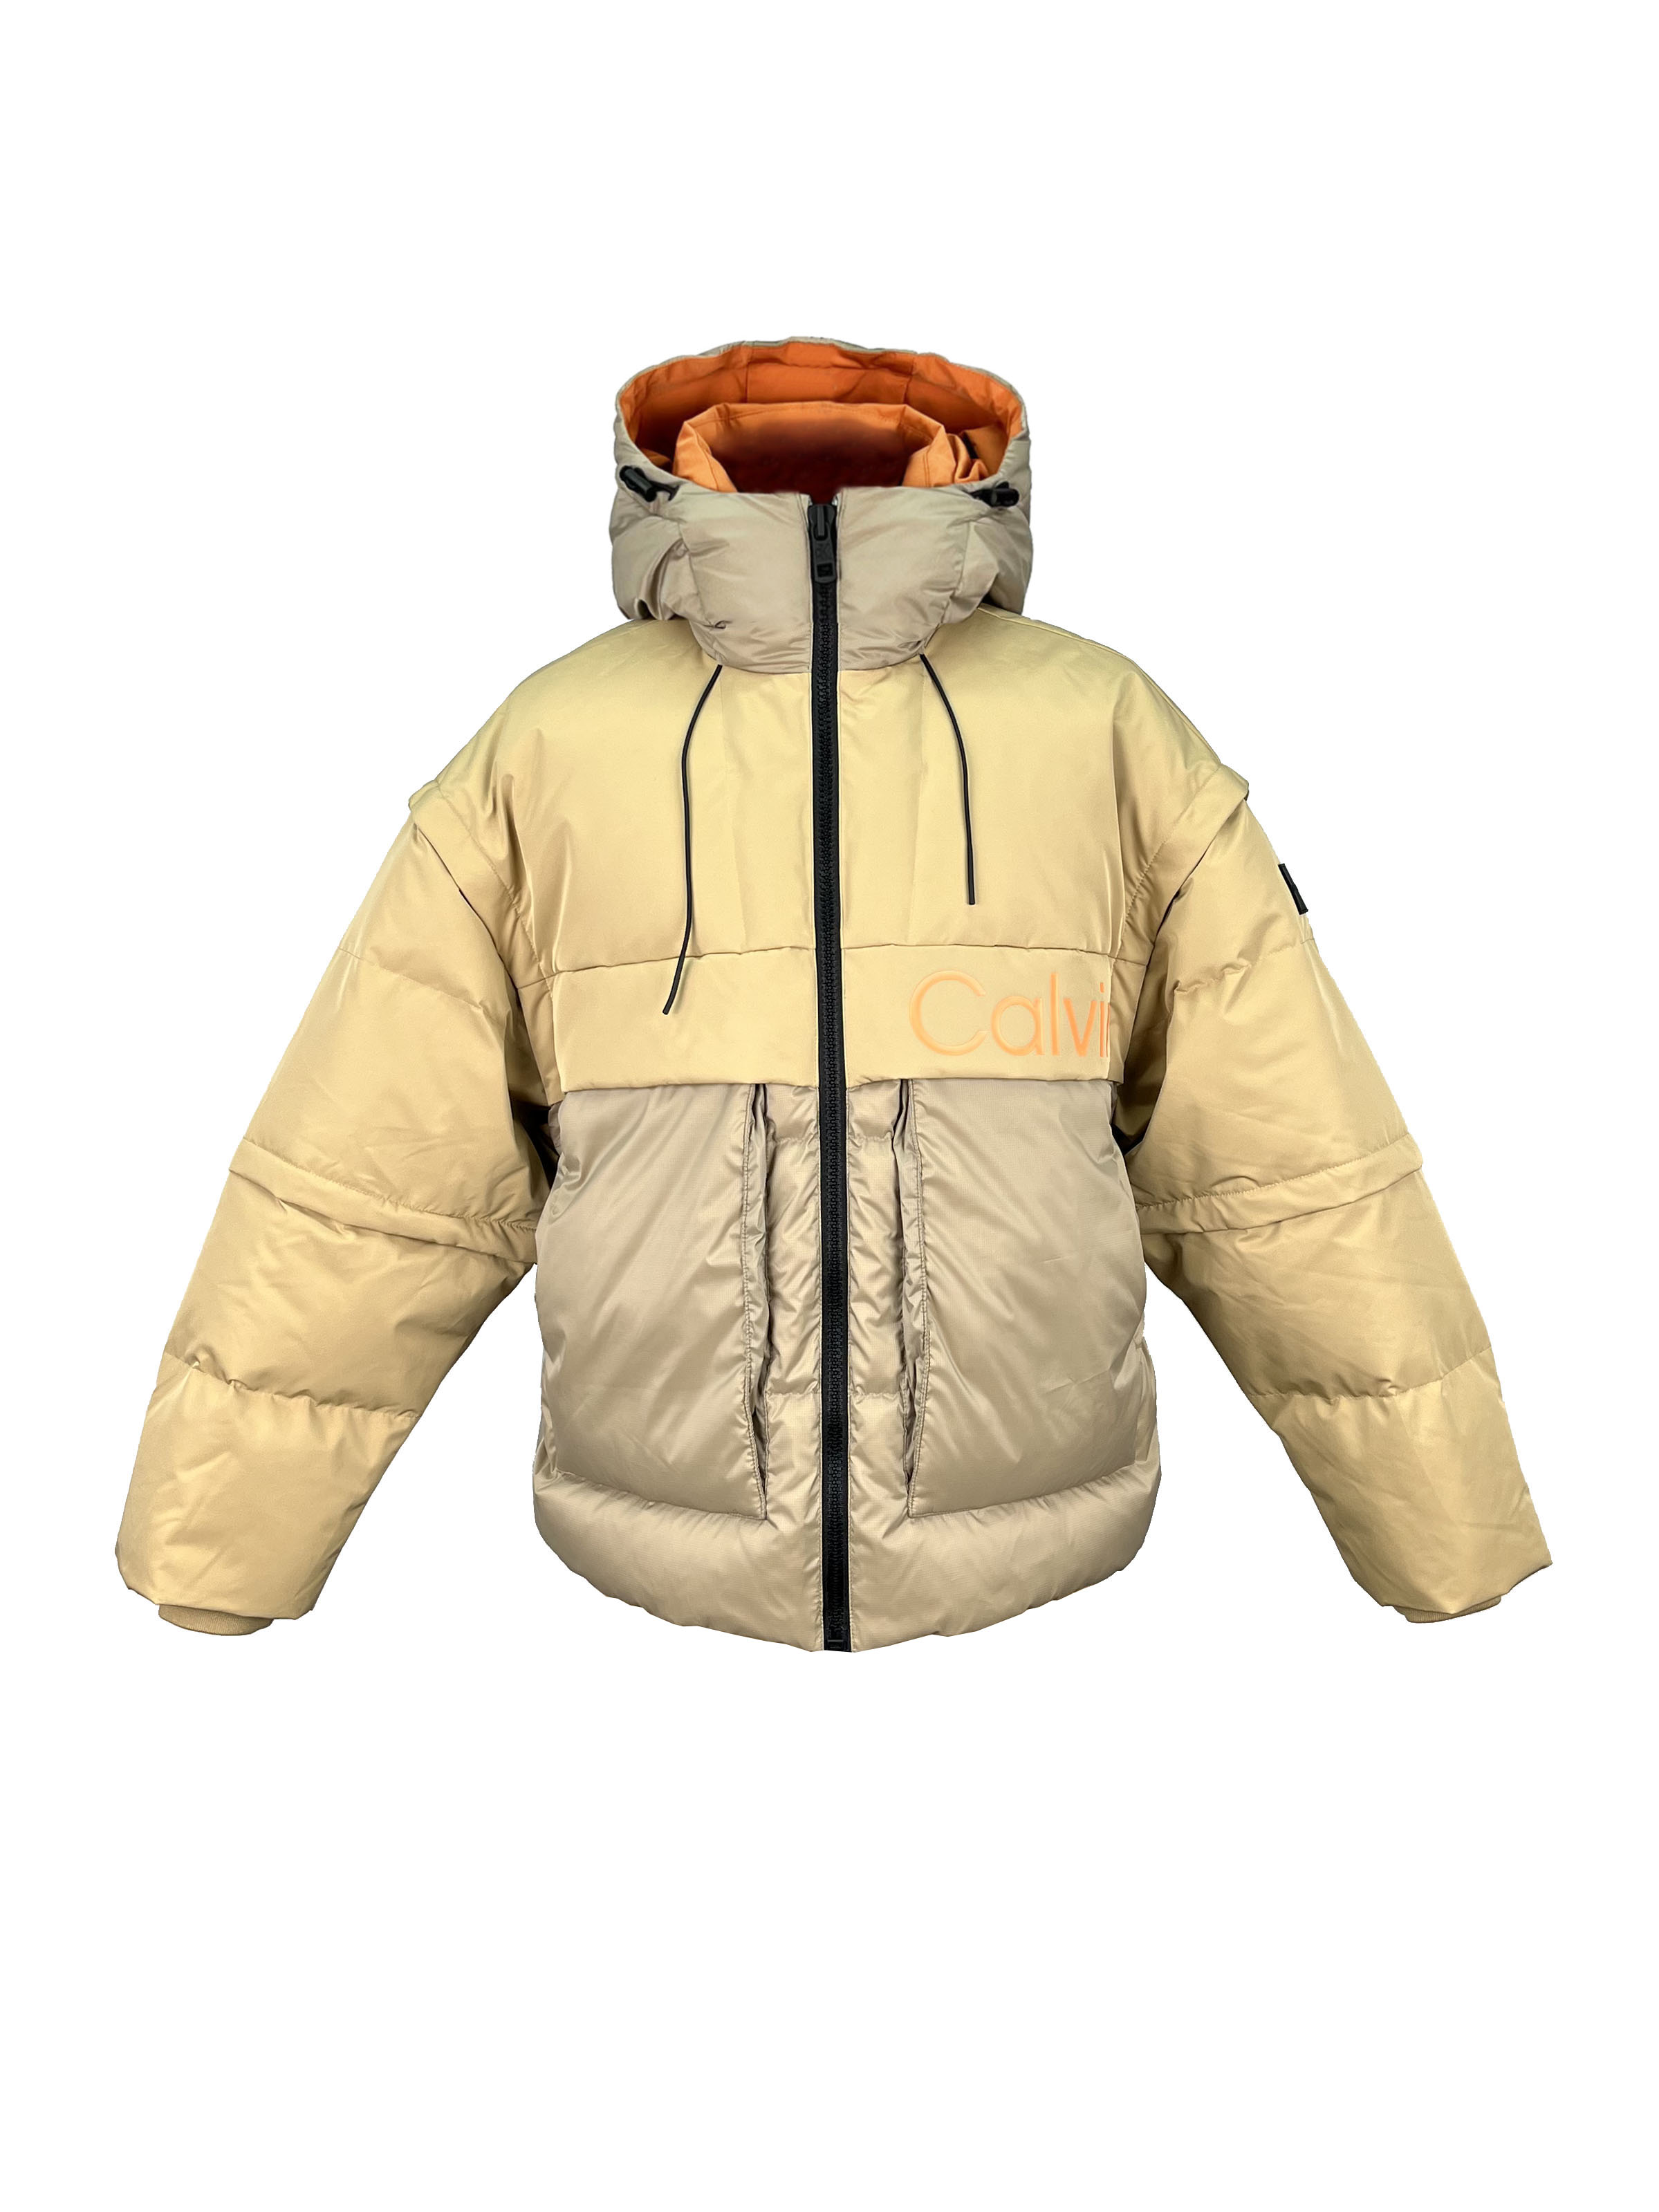 5.padded jacket.(1)